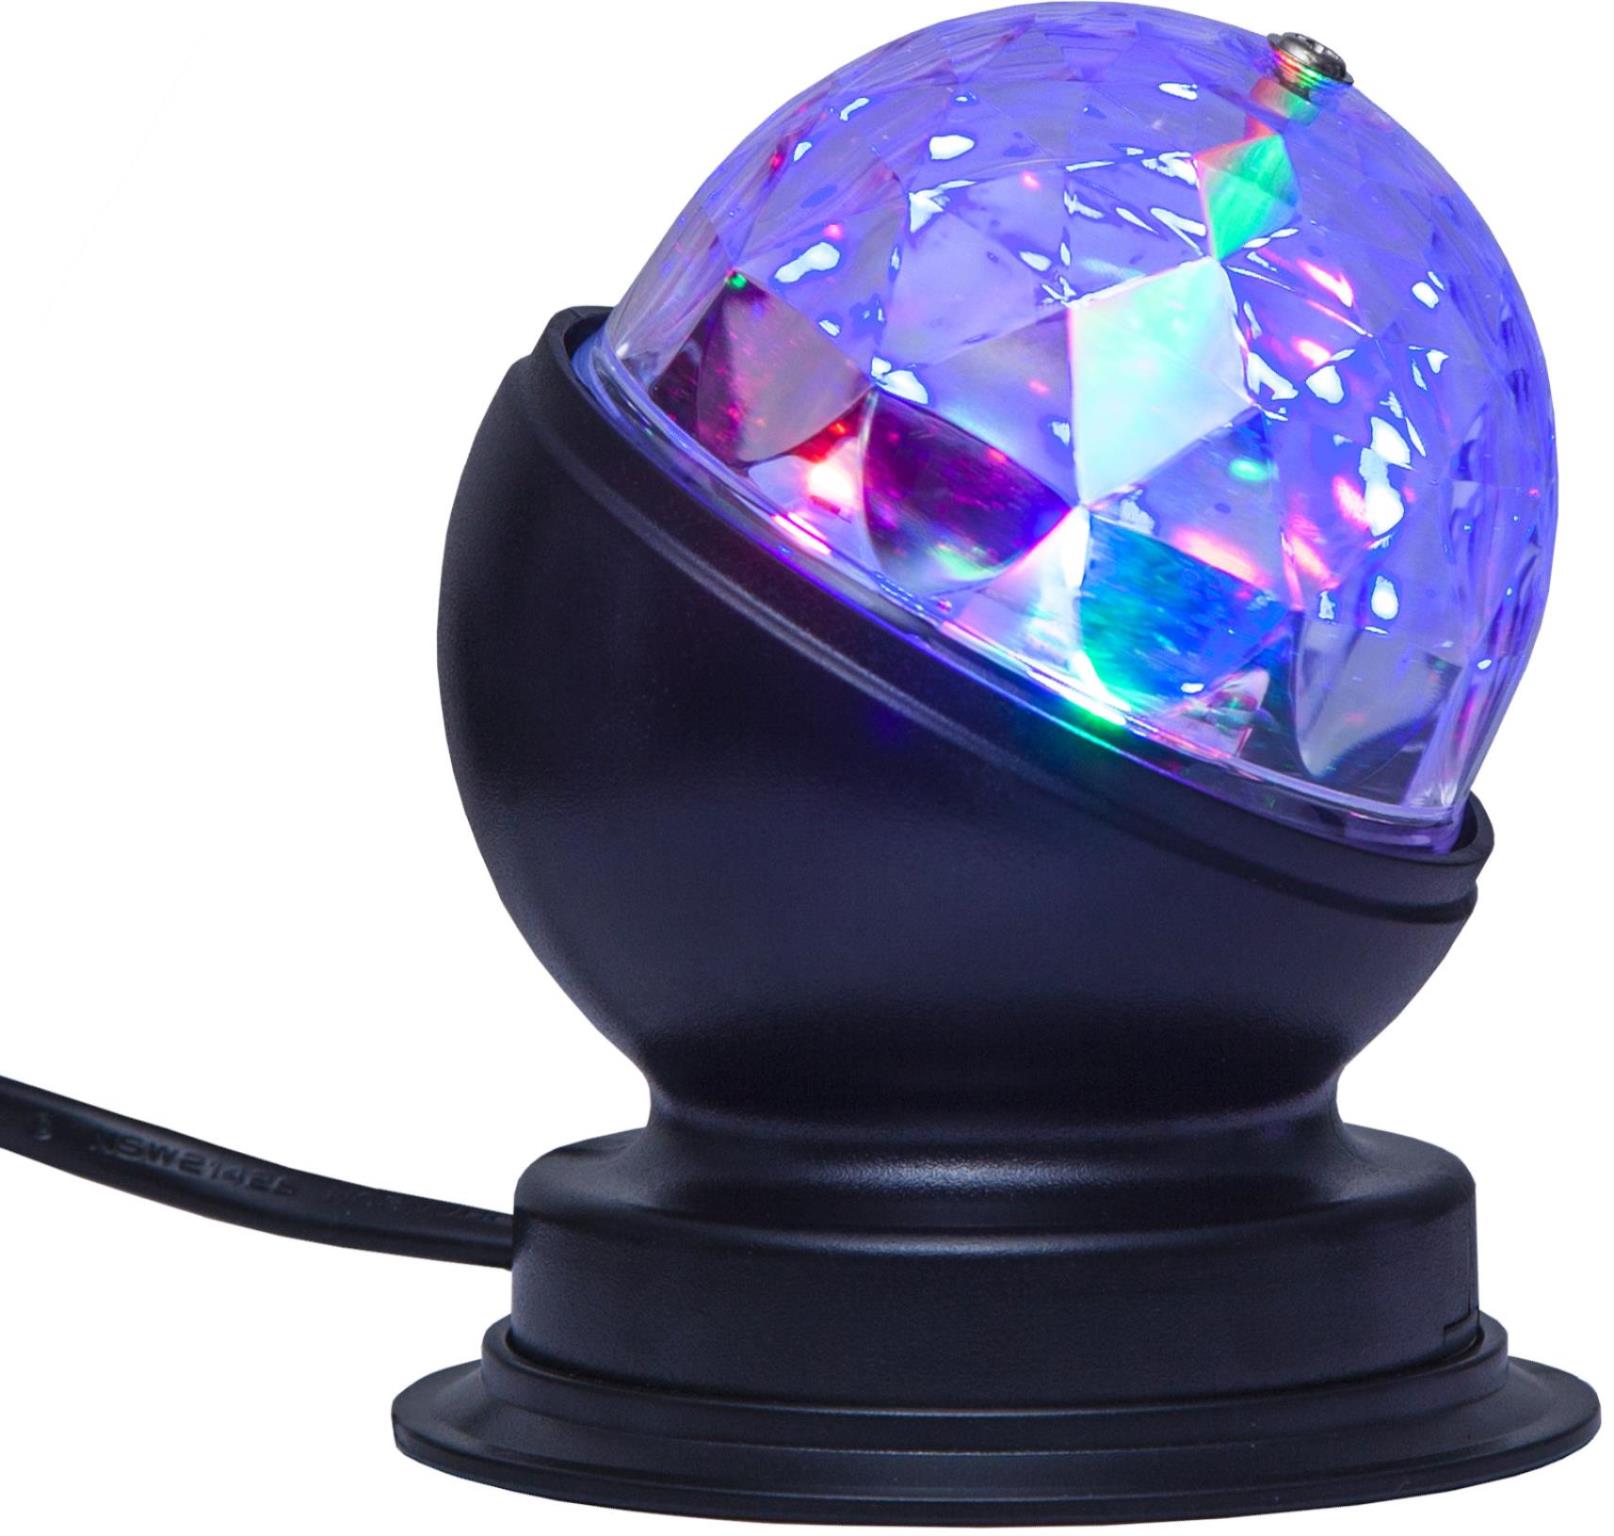 Partylampe - Discolampe - Lichteffekt - bunte Punkte an Decke und Wand - farbiger LED Lichteffekt mit Motor